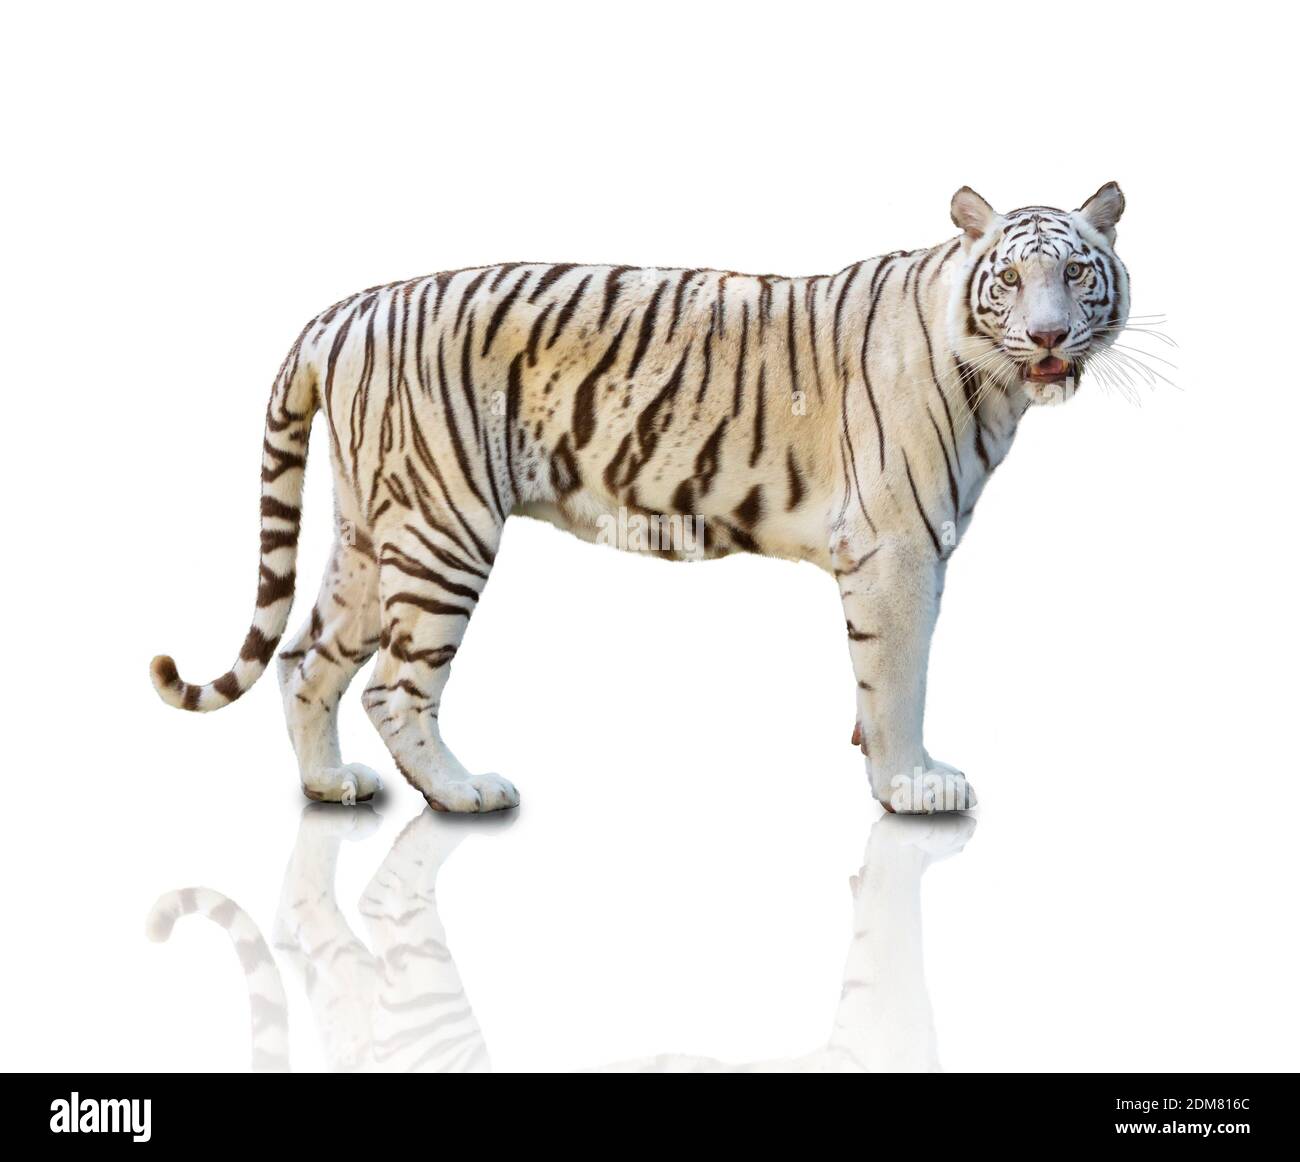 Một bức chân dung của con hổ trắng đứng trên nền trắng sẽ khiến cho bạn bật ngay lên và ngắm nhìn với cảm giác yêu mến và tôn trọng. Bức ảnh này sẽ khiến cho bạn cảm nhận được sự nhanh nhẹn và sự uyển chuyển của con hổ trắng.